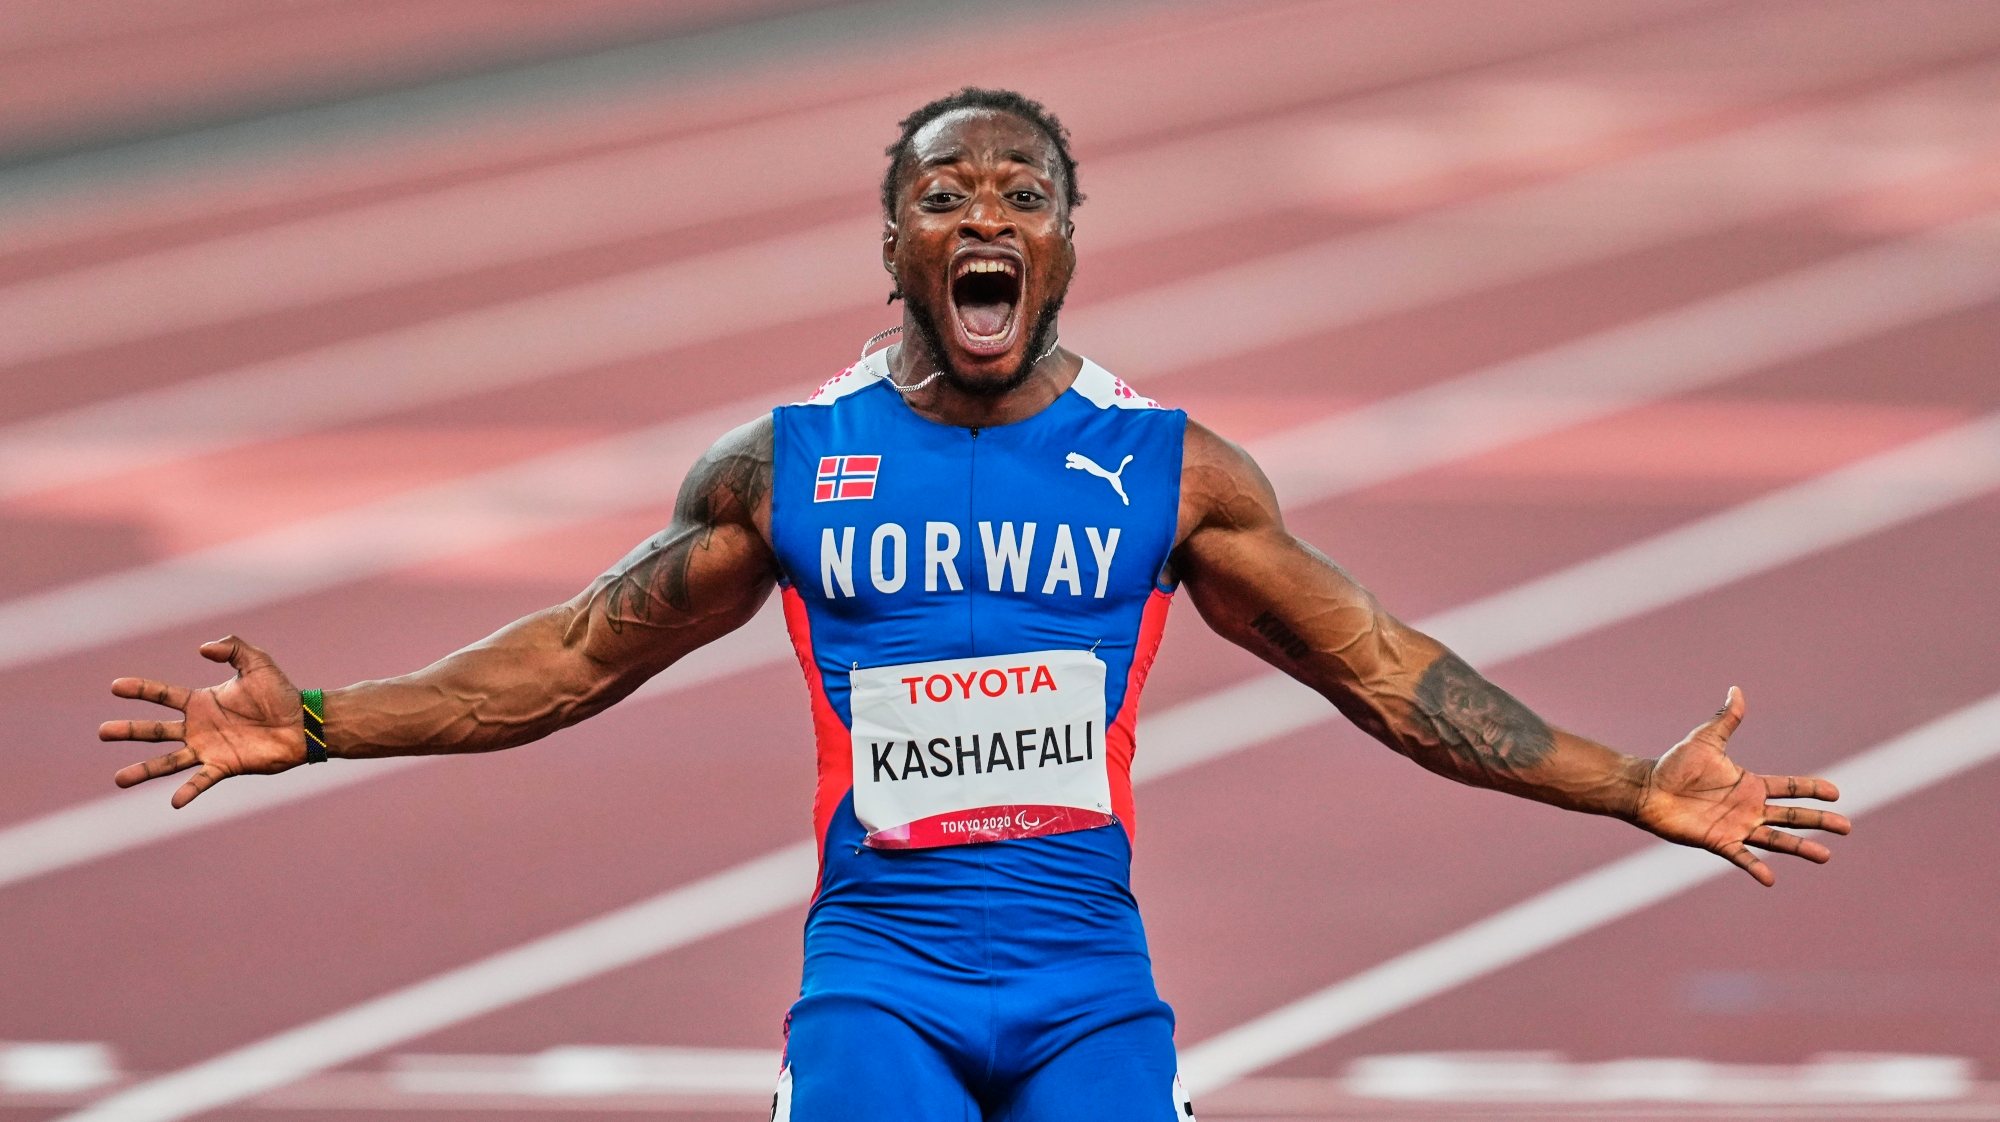 Salum Ageze Kashafali juntou o título olímpico ao mundial e ao europeu, conseguindo fazer a corrida mais rápida numa edição dos Jogos Paralímpicos